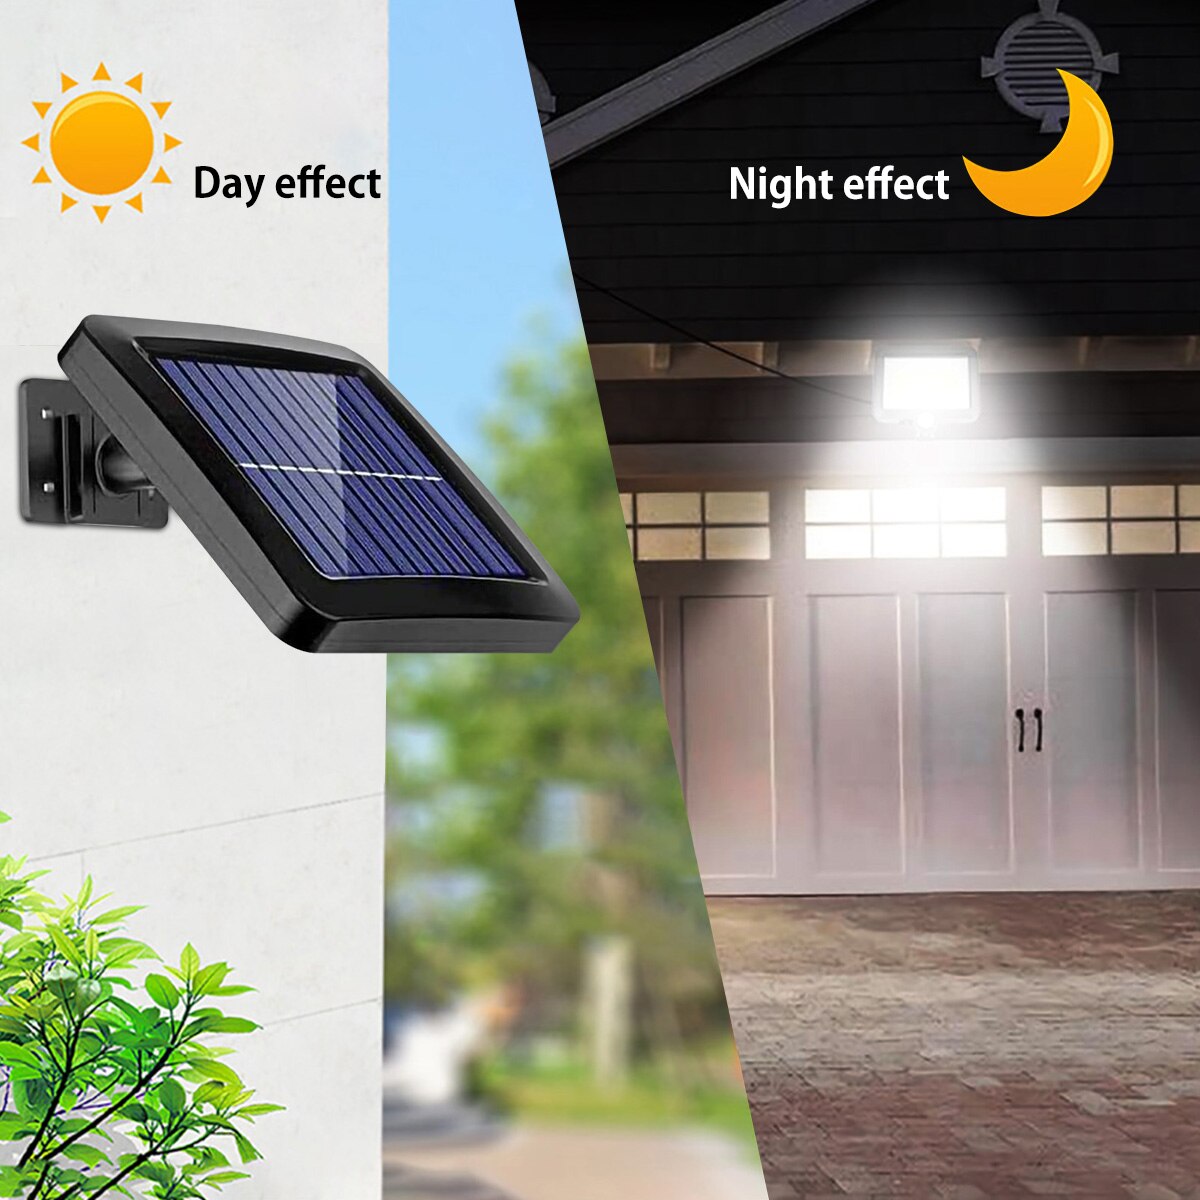 120COB Solar Street Light Motion Sensor Solar Light with 5m Extension Cord Indoor and Outdoor Lighting Wall Light Spotlight Moorescarts